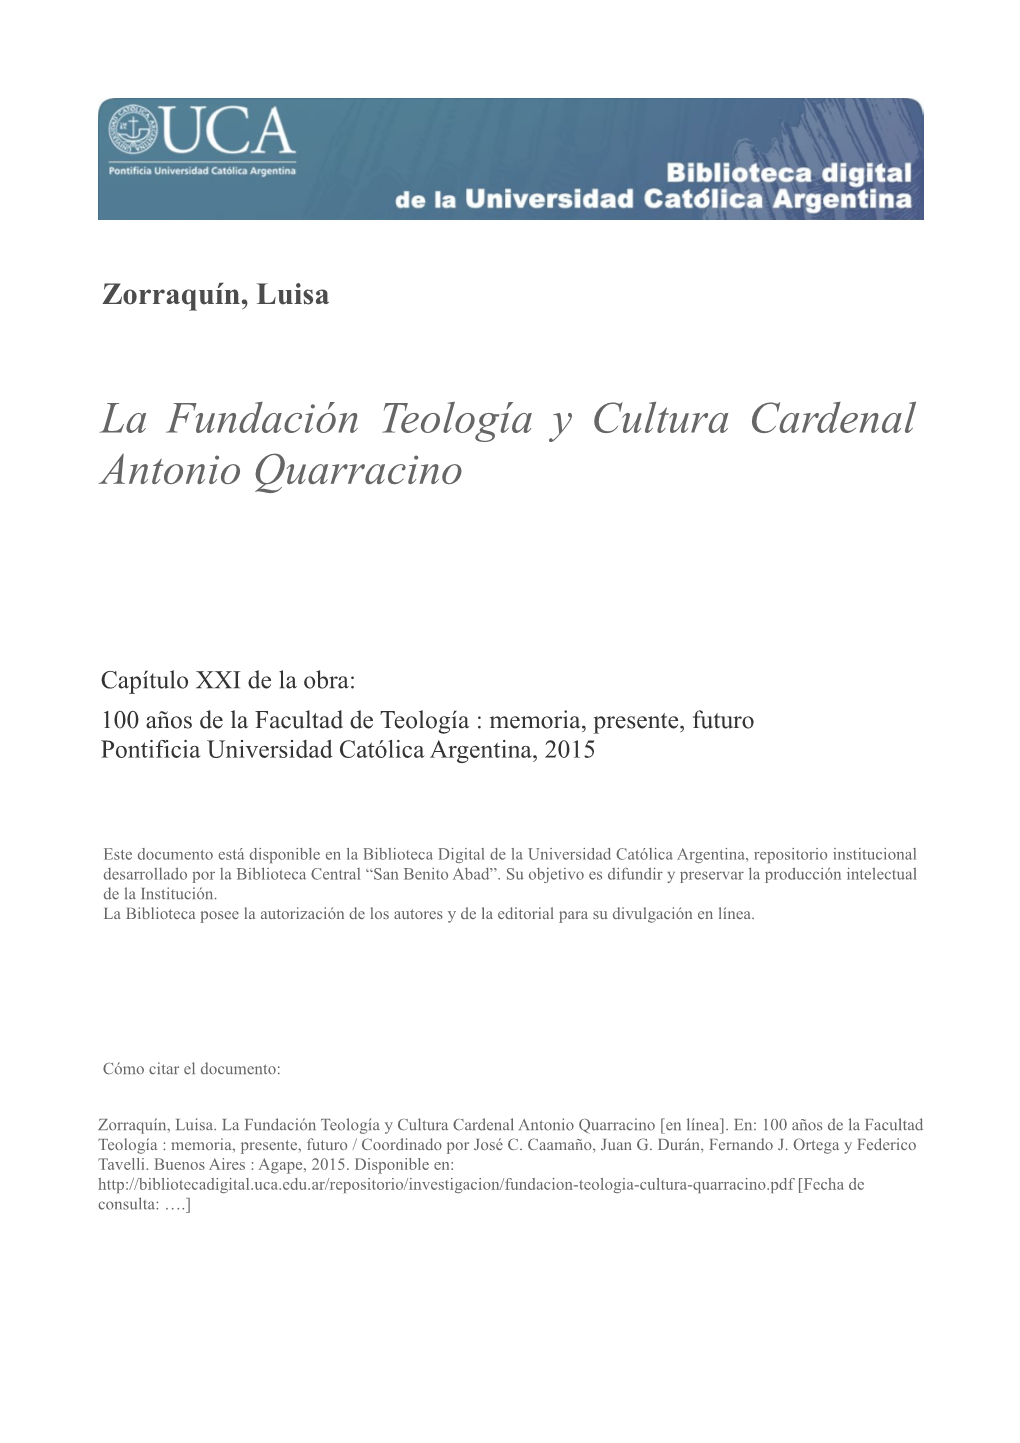 La Fundacion Teologia Y Cultura Cardenal Quarracino